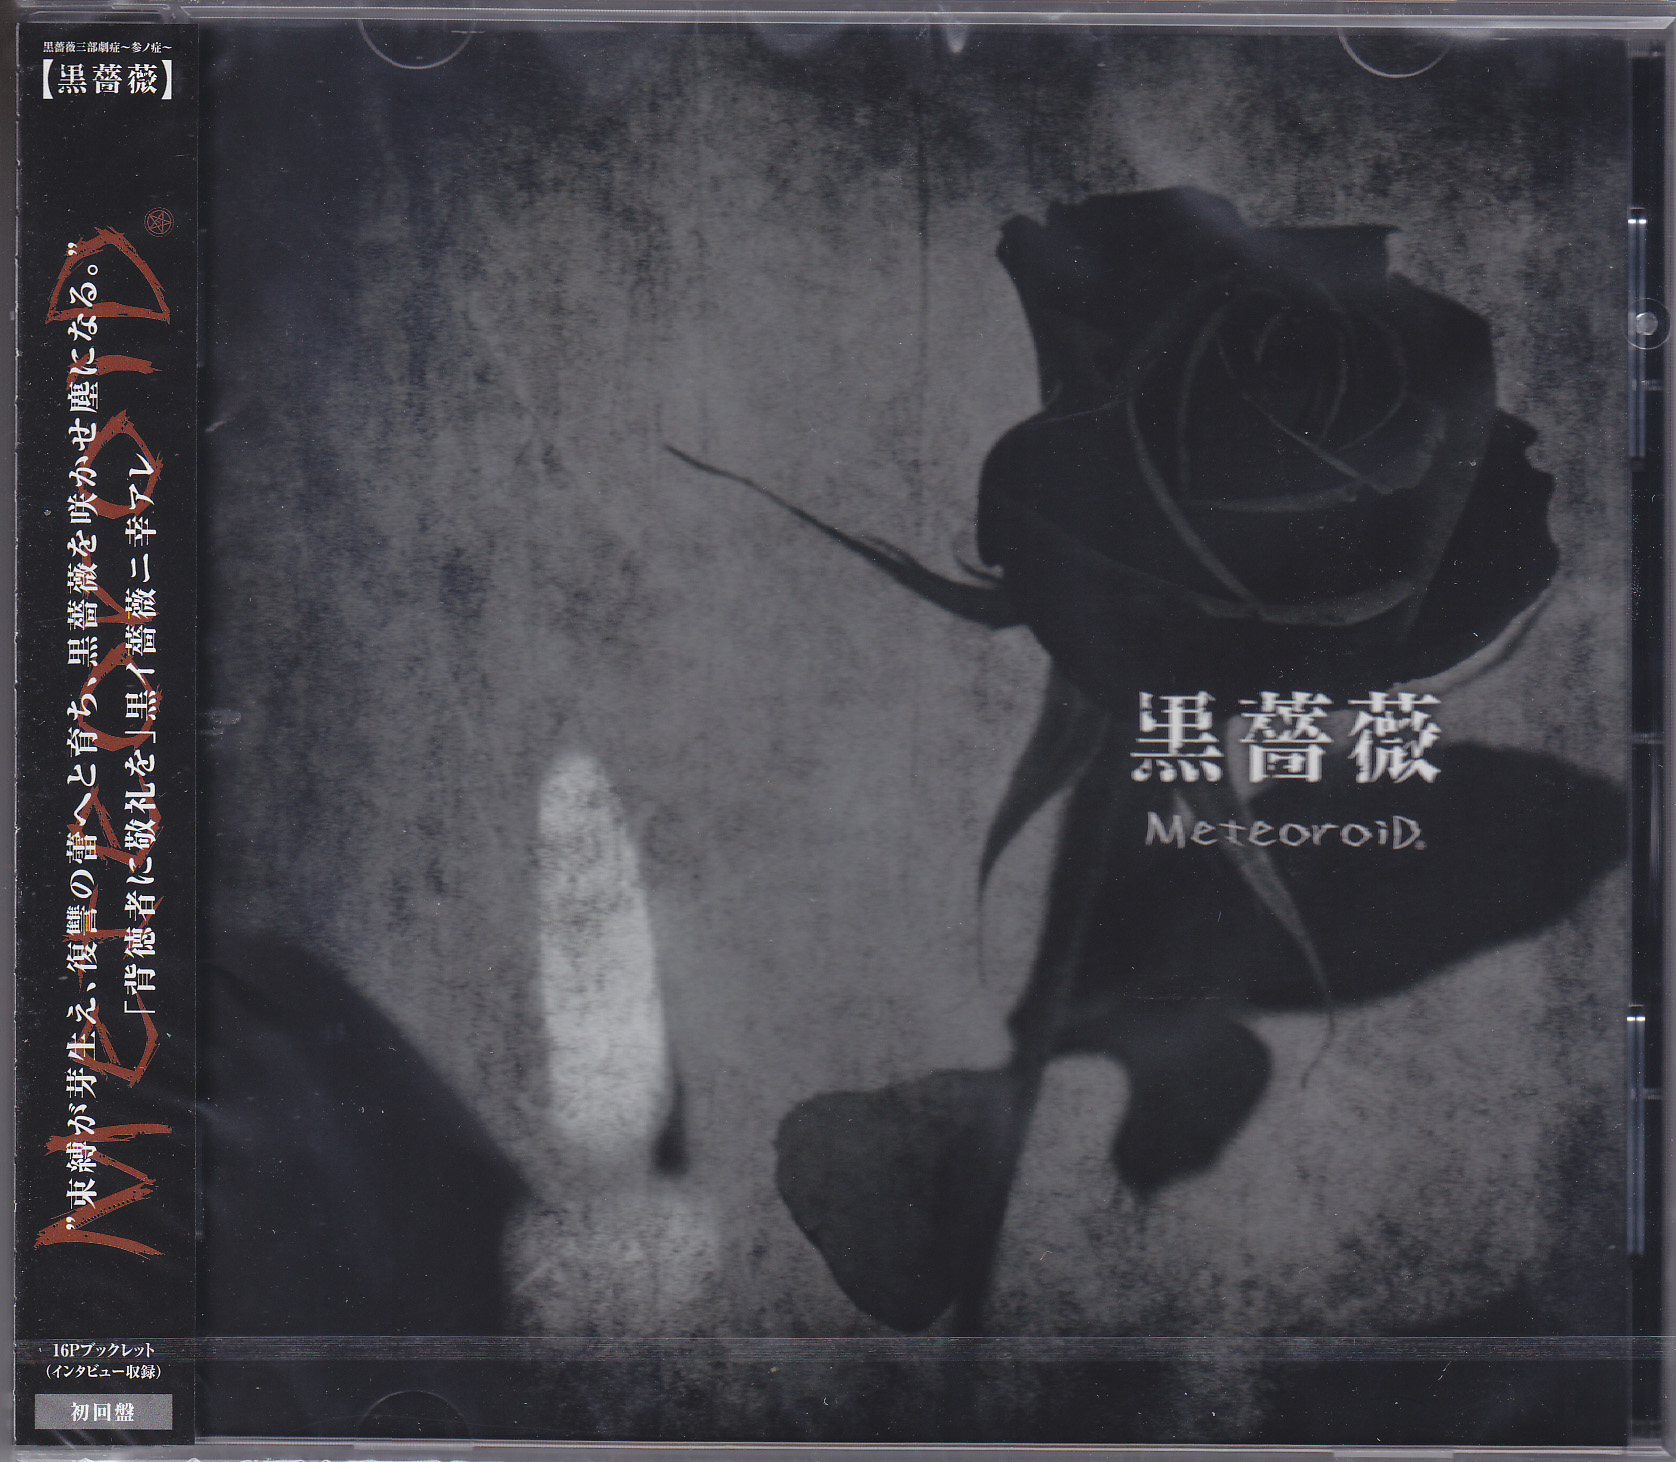 メテオロイド の CD 黒薔薇【初回限定盤】